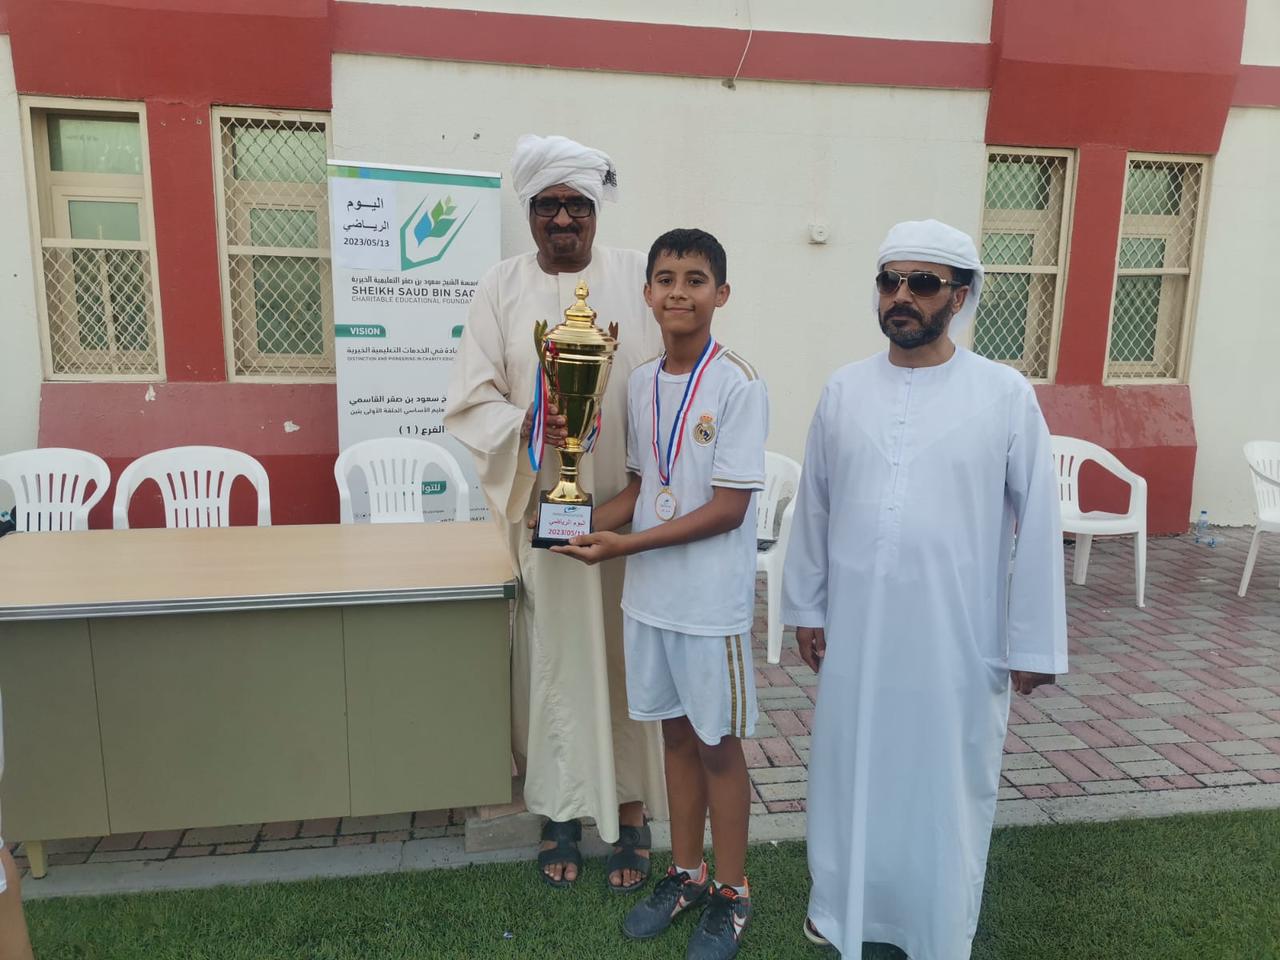 مشاركة مدرسة الشيخ سعود فرع 1 في نادي راس الخيمة الرياضي في بطولة الناشئين